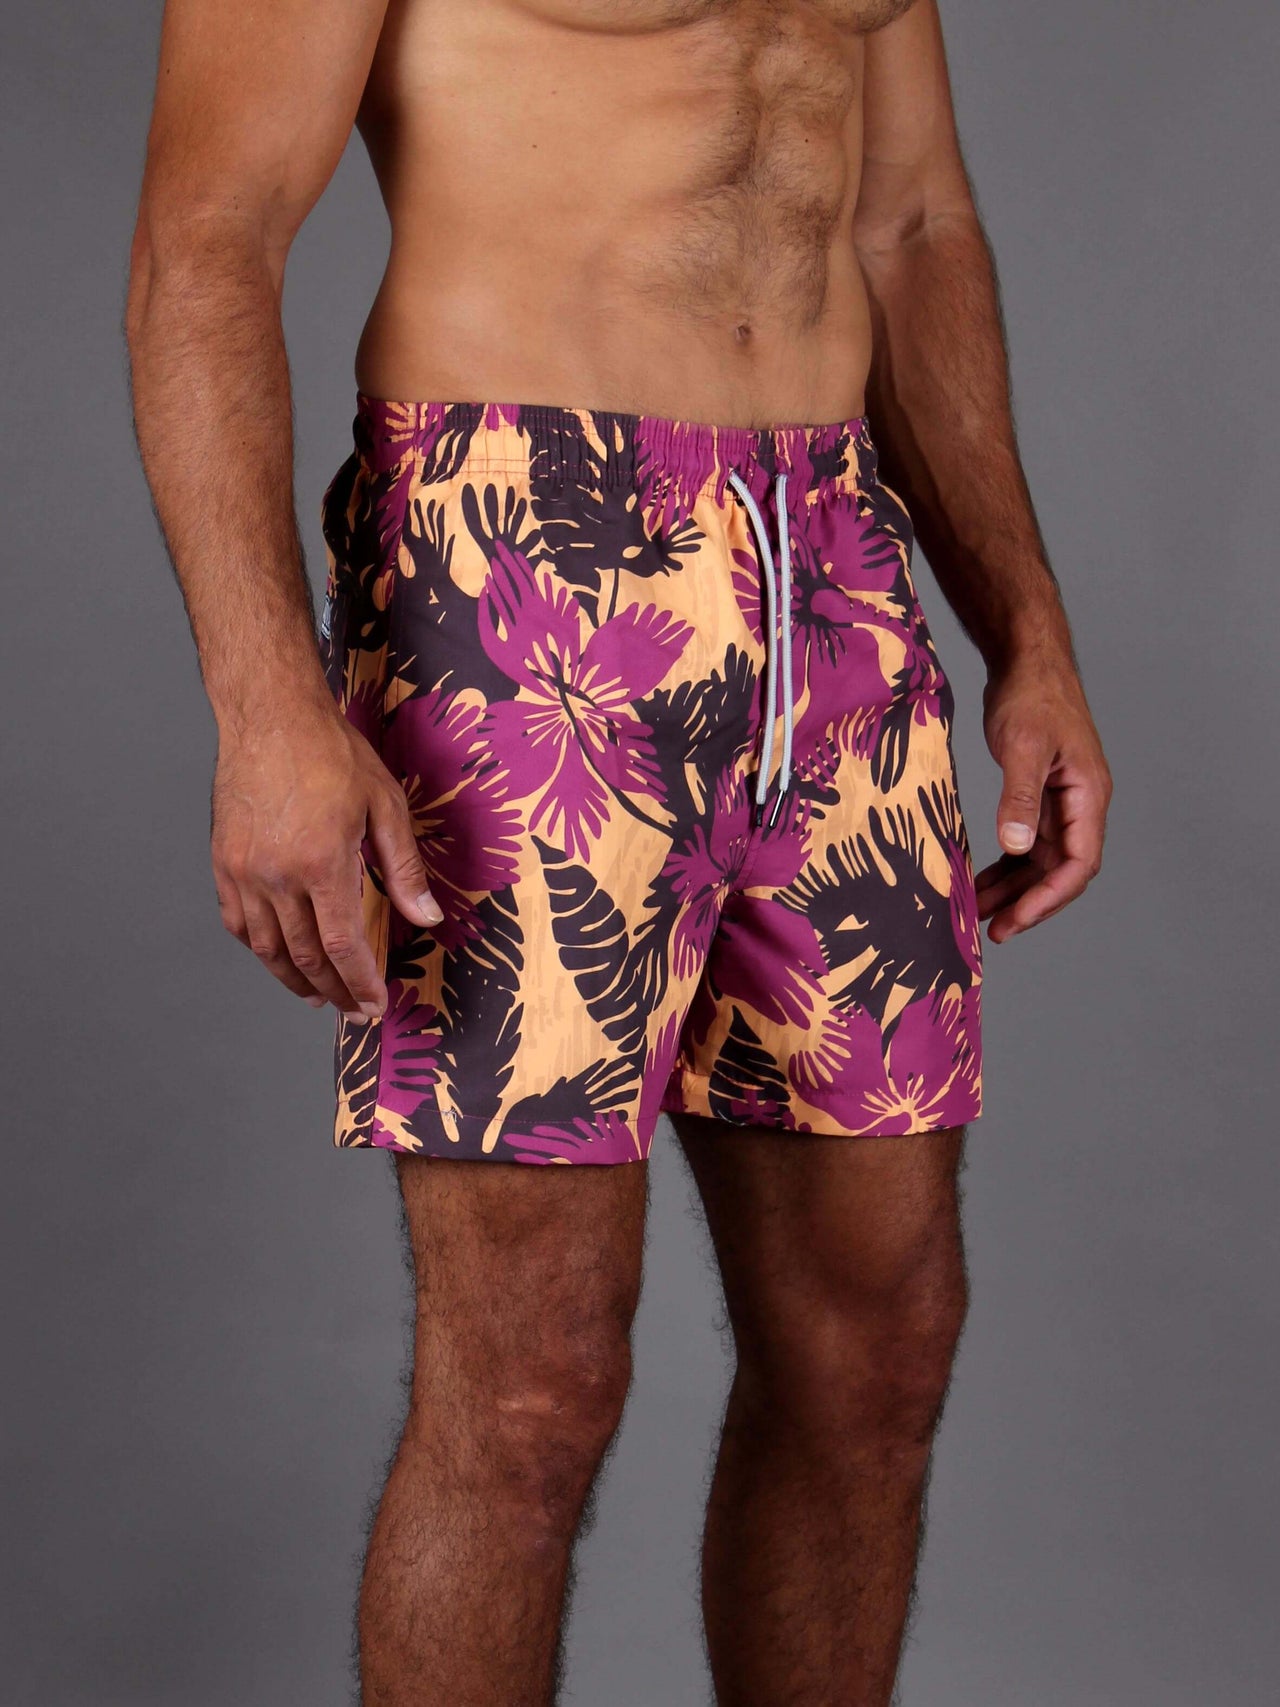 AQUA Swim Shorts - Tropical